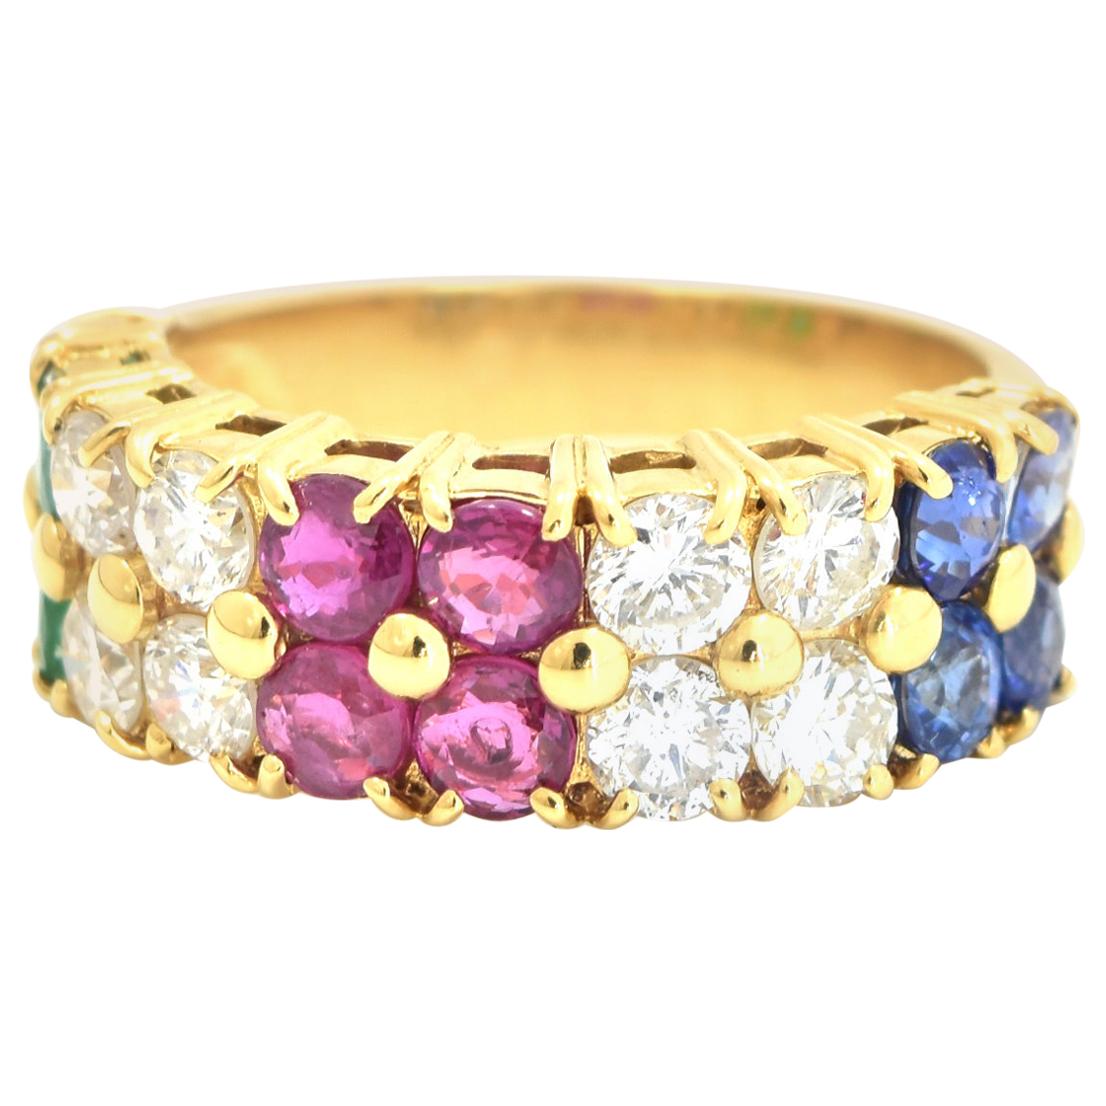 Sapphire, Diamond, Rubies and Emerald Tutti Frutti Ring in 18 Karat Yellow Gold